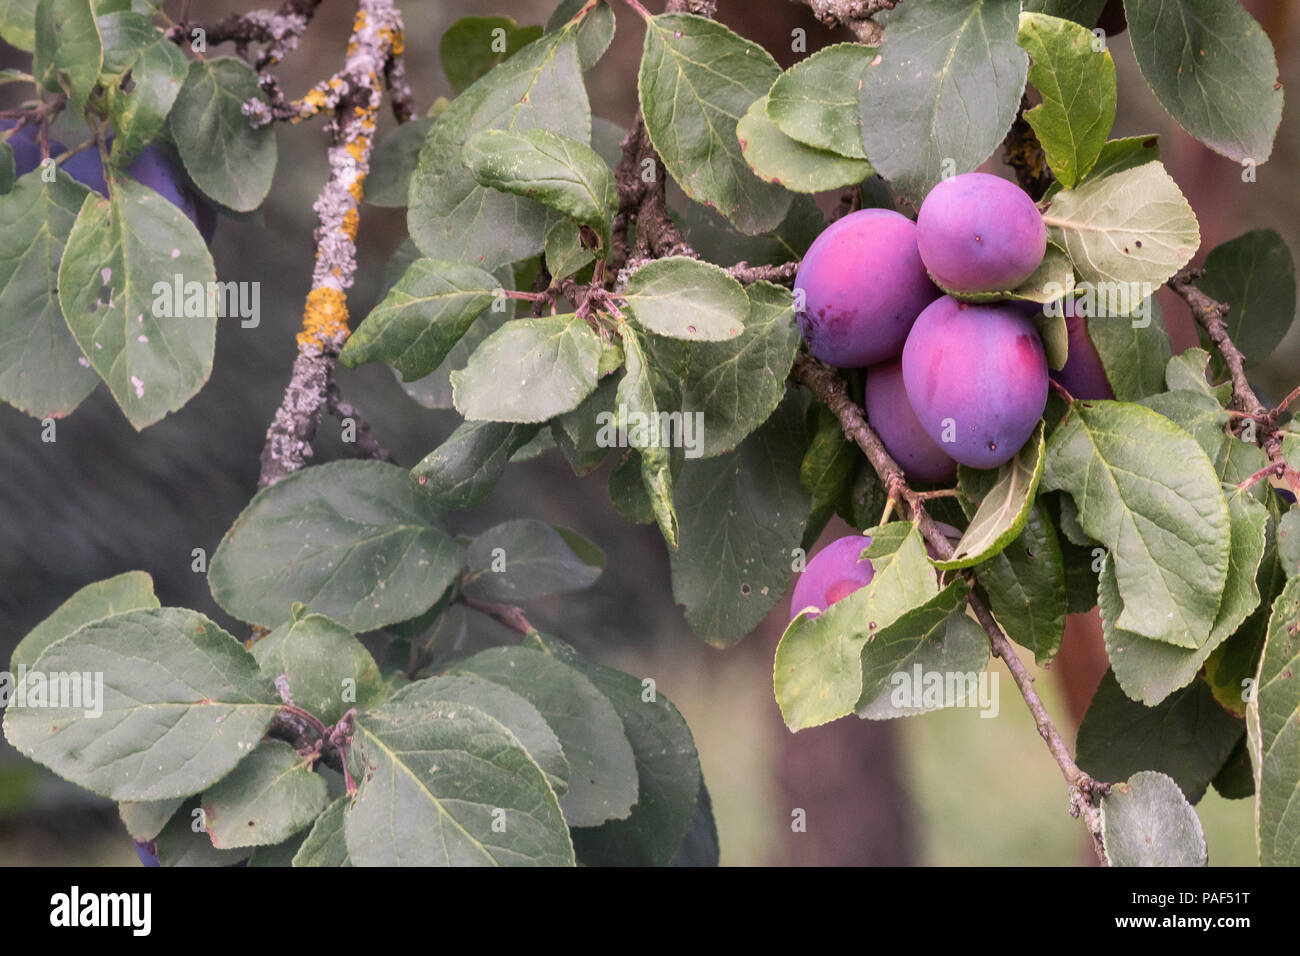 Plum tree haning full with ripe plum Stock Photo